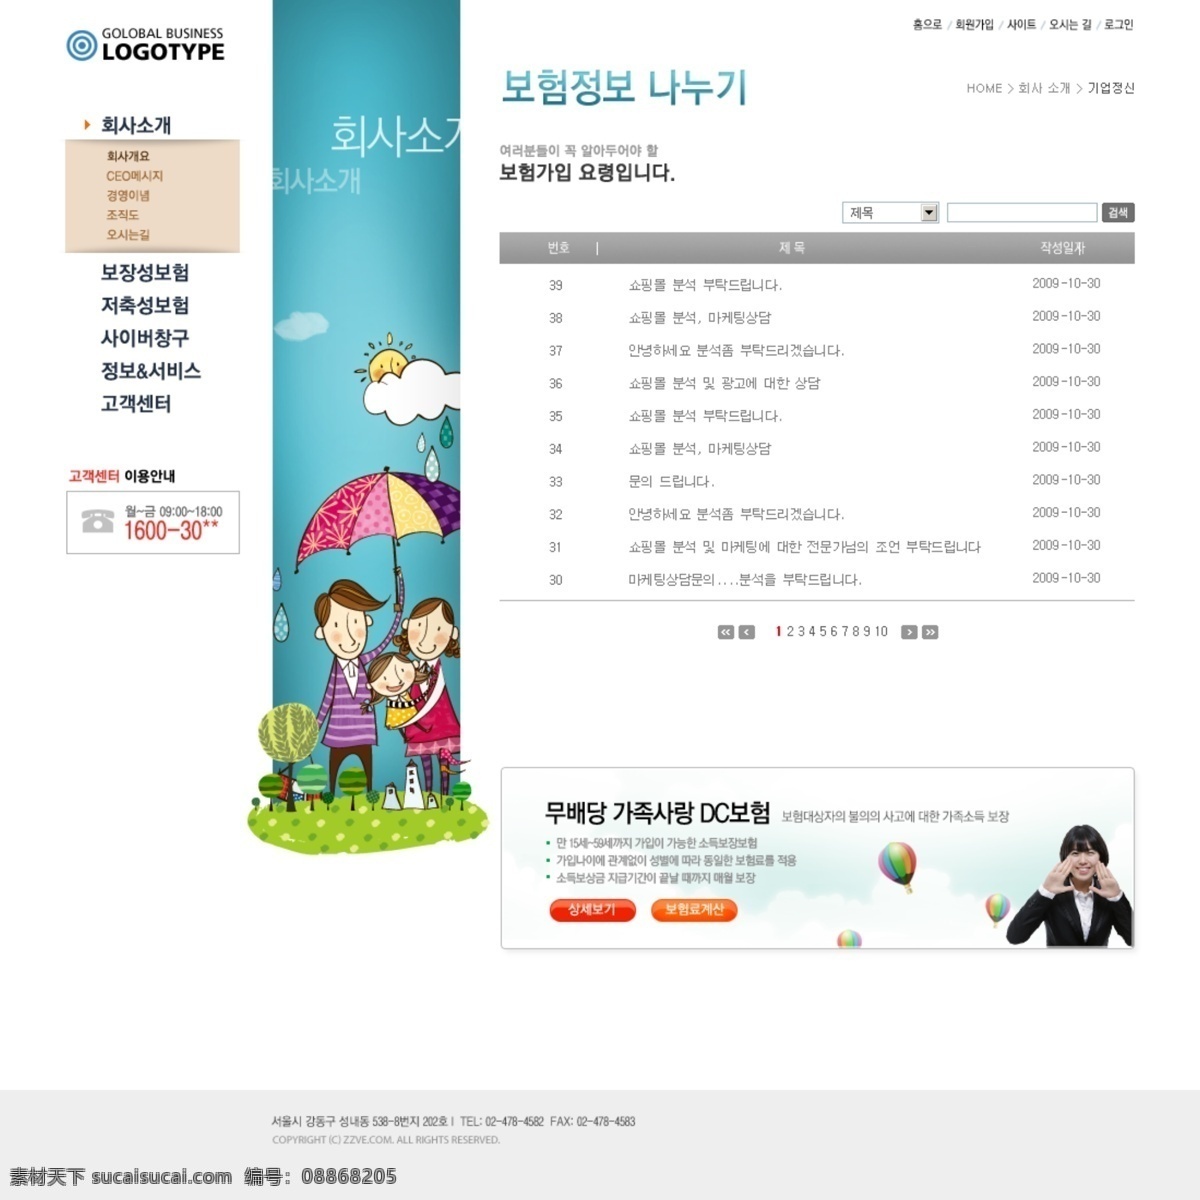 左 中右 三 列 式 网页设计 分层 源文件 网页模板 网页界面 界面设计 网页版式 版式设计 网页布局 韩国模板 卡通 漫画 插画 人物 web 韩文模板 白色